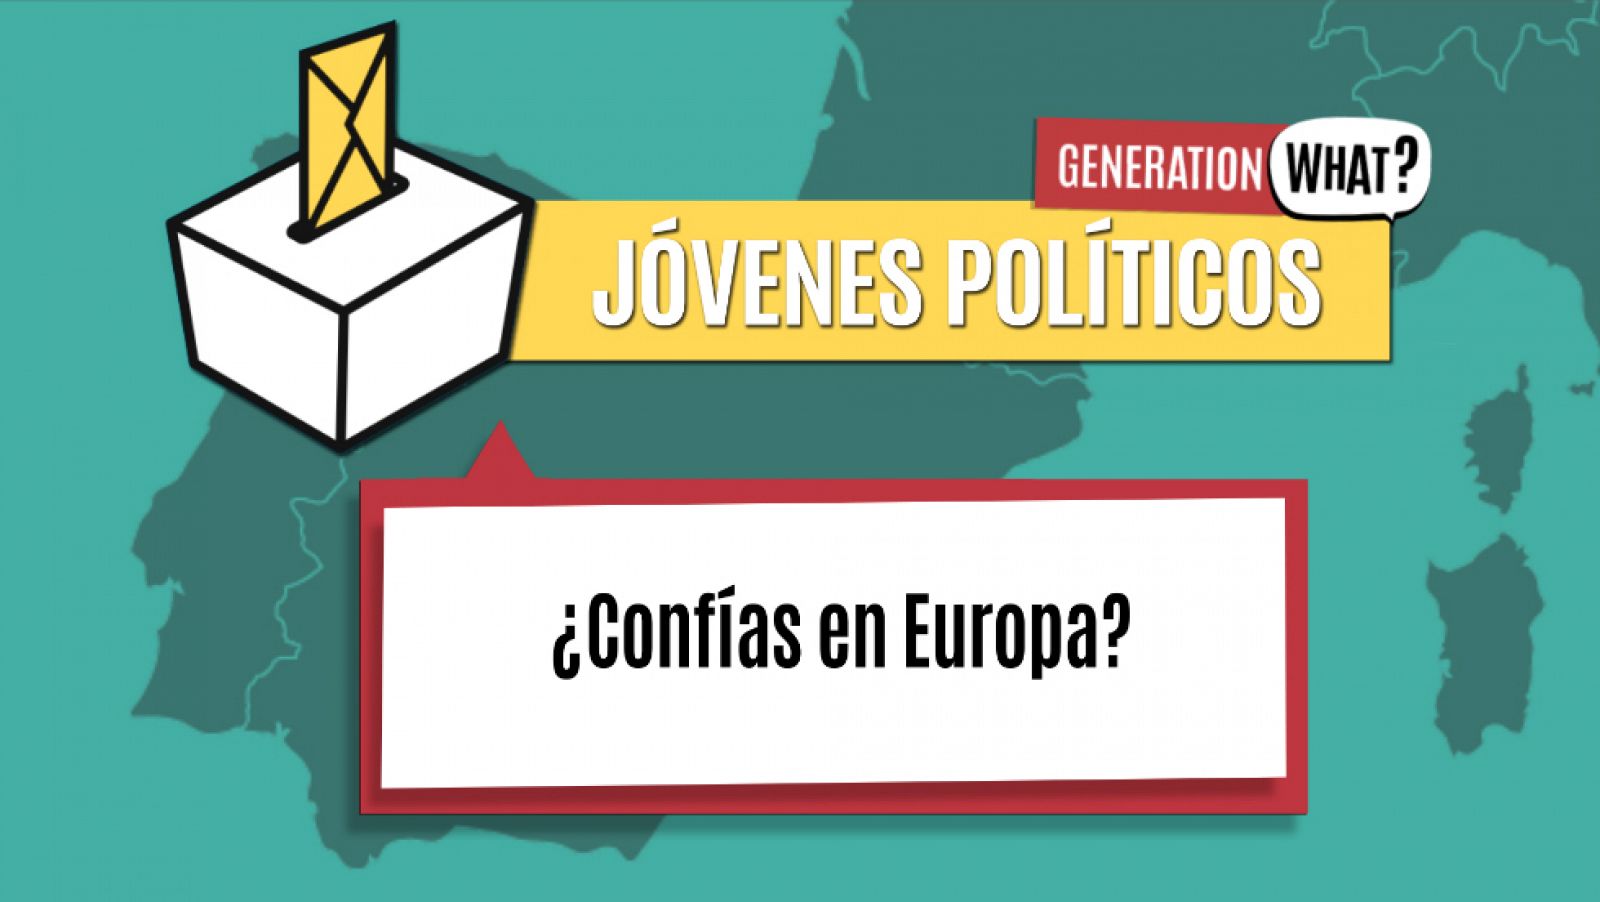 Jóvenes Políticos ¿Confías en Europa?